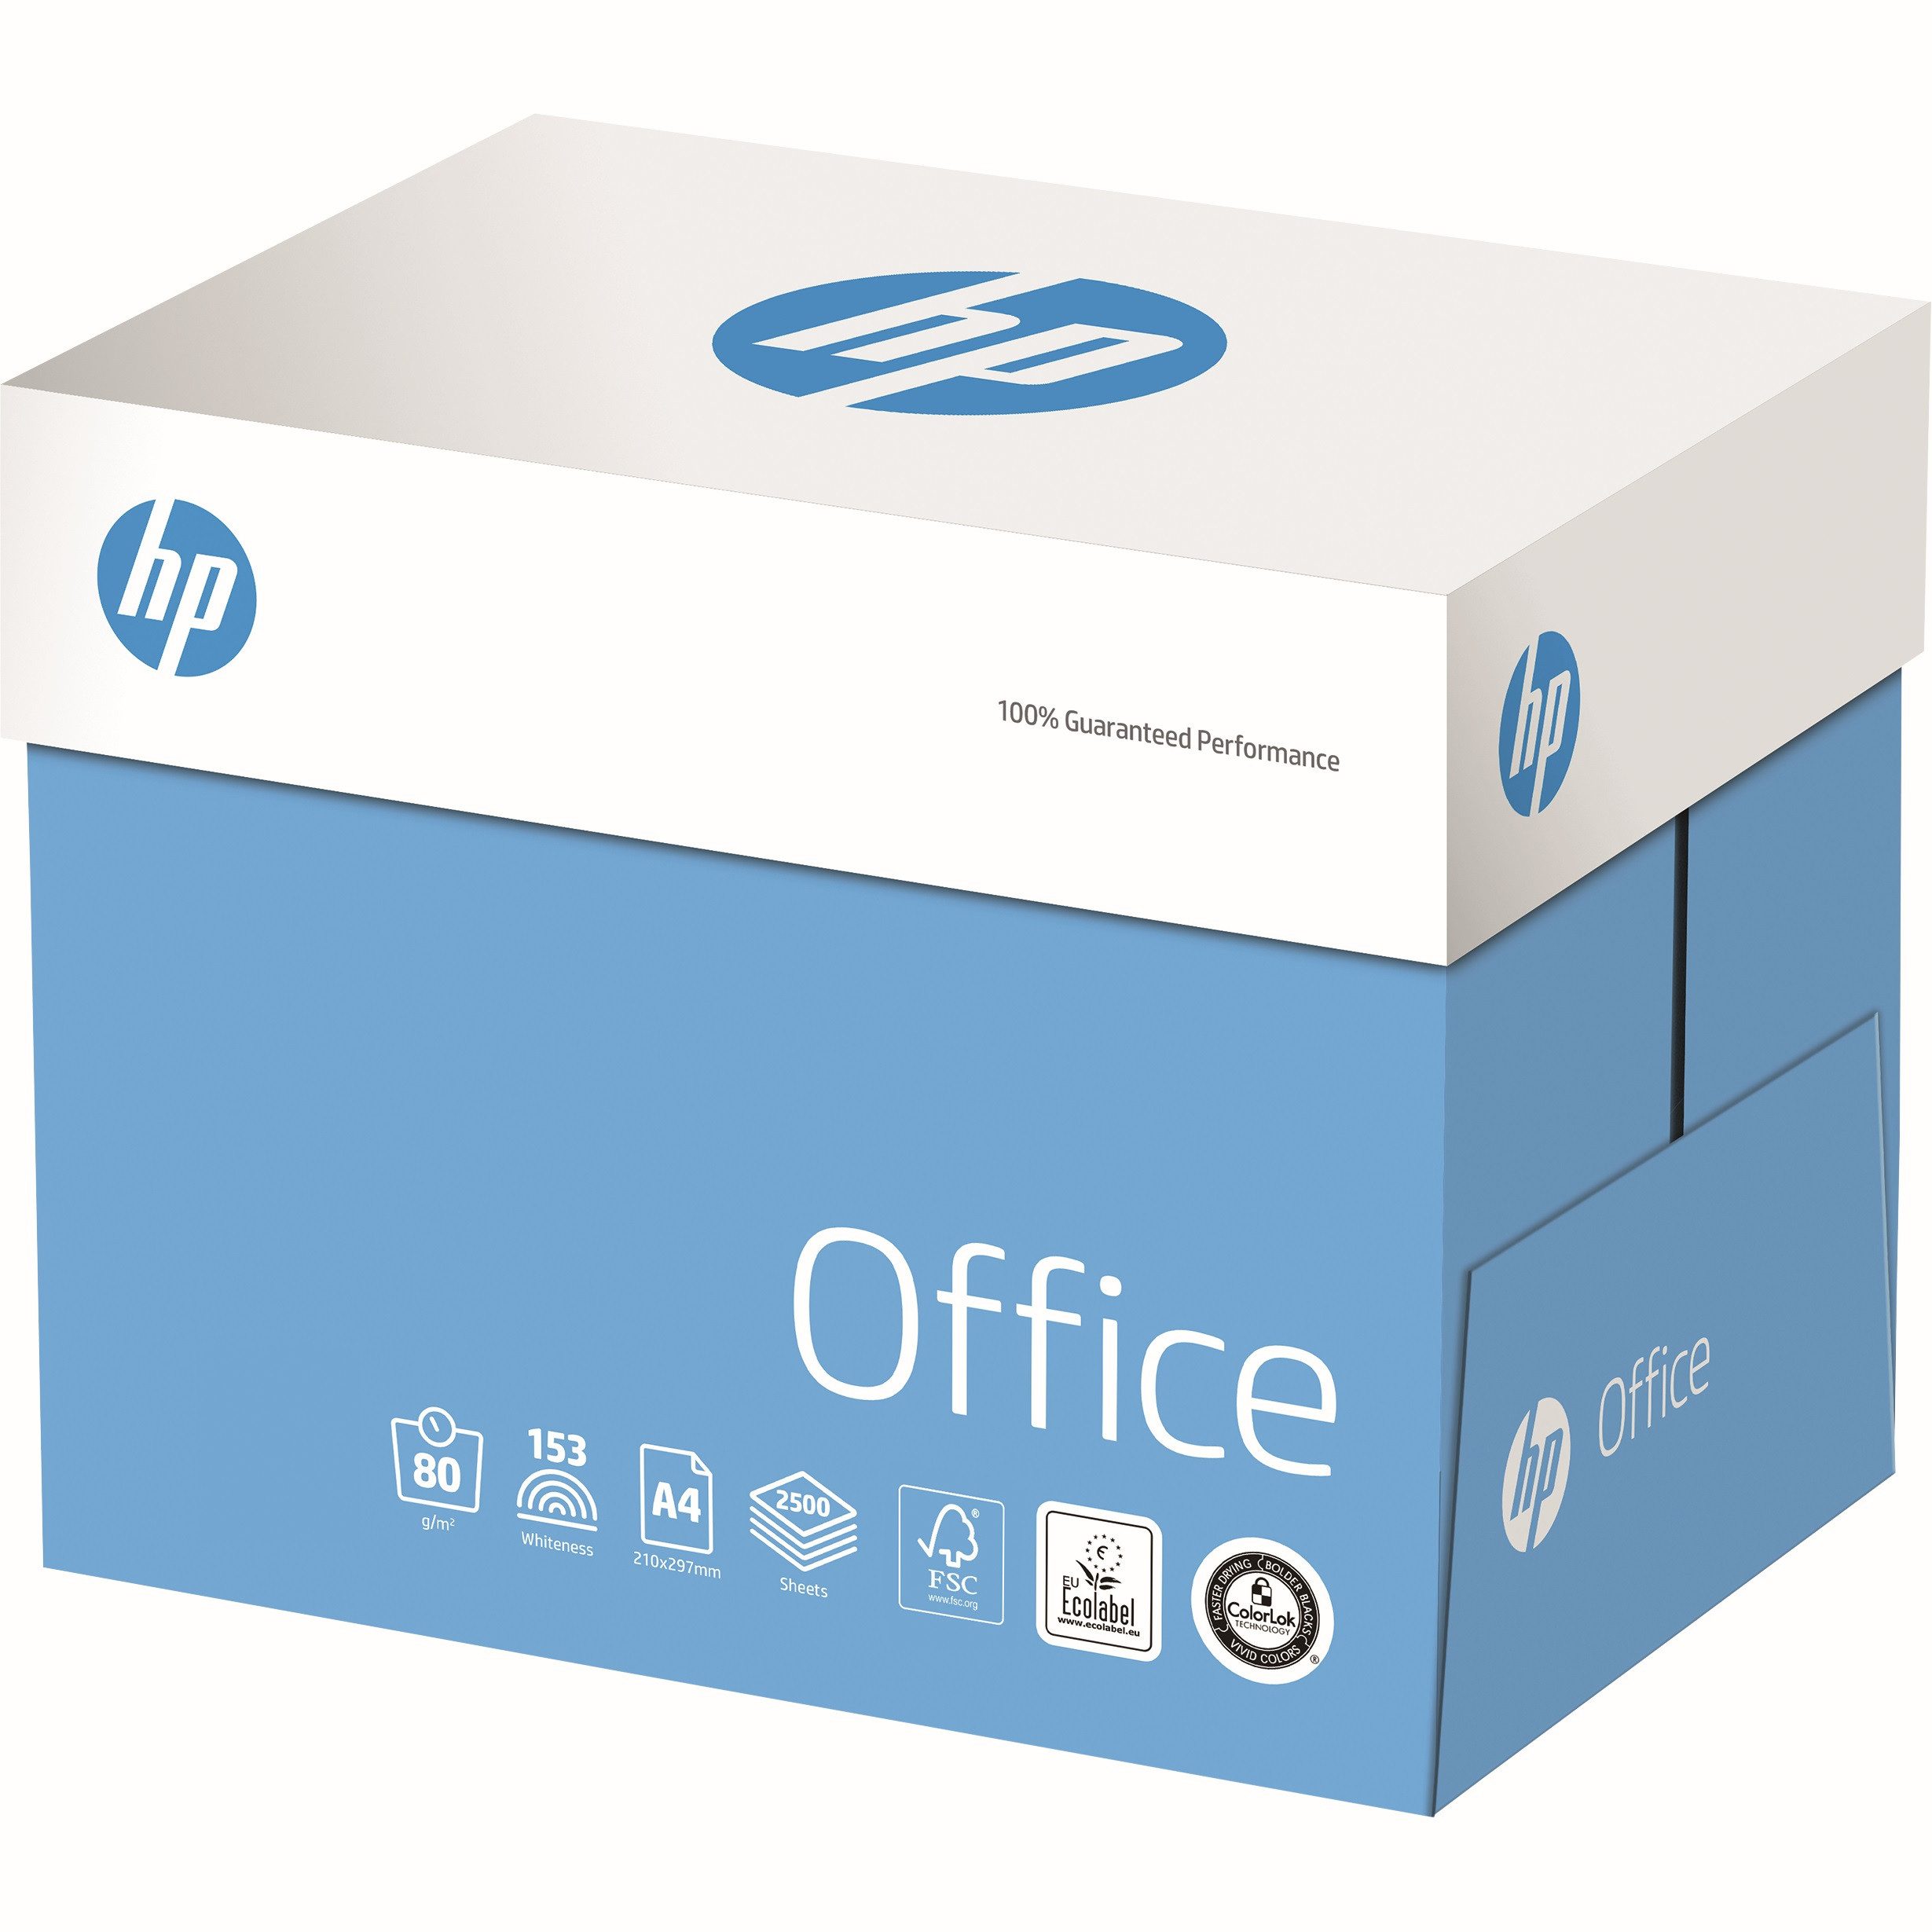 HP ENVY Inspire 7220e AiO Printer Копіювальний папір hp Копіювальний папір OFFICE, DIN A4, 80 g/m², Öko-Box: 2.500 Blatt, ElementarChlorFrei gebleicht (ECF), holzfrei